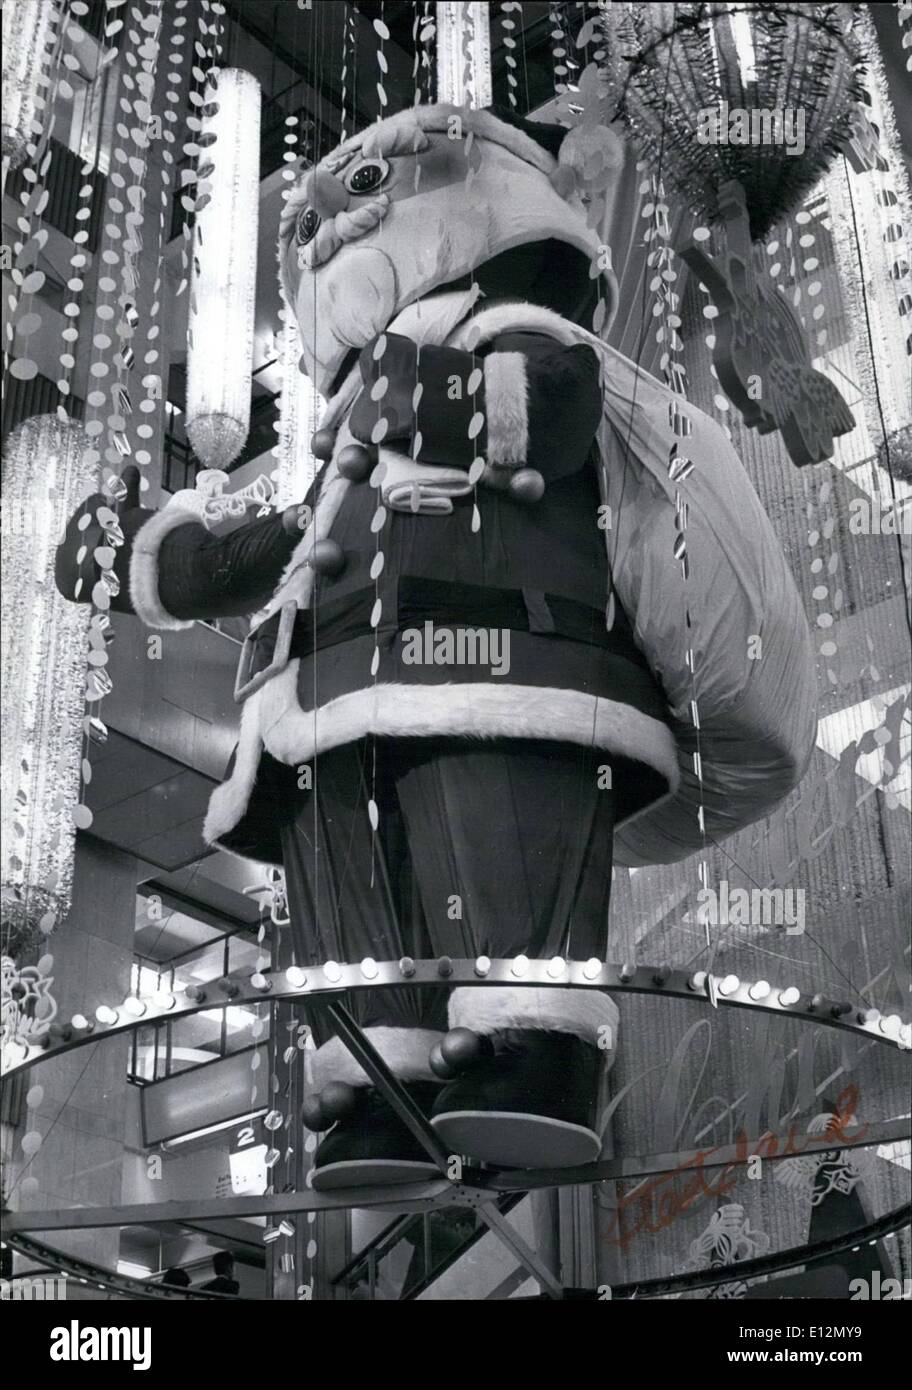 24 février 2012 - Jeux Olympiques de Tokyo se félicite après Noël : Bien que le Japon n'est pas un pays chrétien, ils ont adopté le festival avec beaucoup d'enthousiasme, en particulier les commerçants qui ont pris leurs signes Jeux Olympiques et des décorations, et les ont remplacés par leur Noël s'affiche. Avec les poches des travailleurs s'enflant avec bonus équivalent à deux ans et trois mois de salaire, les commerçants sont heureux. Ce modèle de 18 pieds d'un Père Noël est suspendu au plafond d'un grand magasin à Tokyo. Banque D'Images